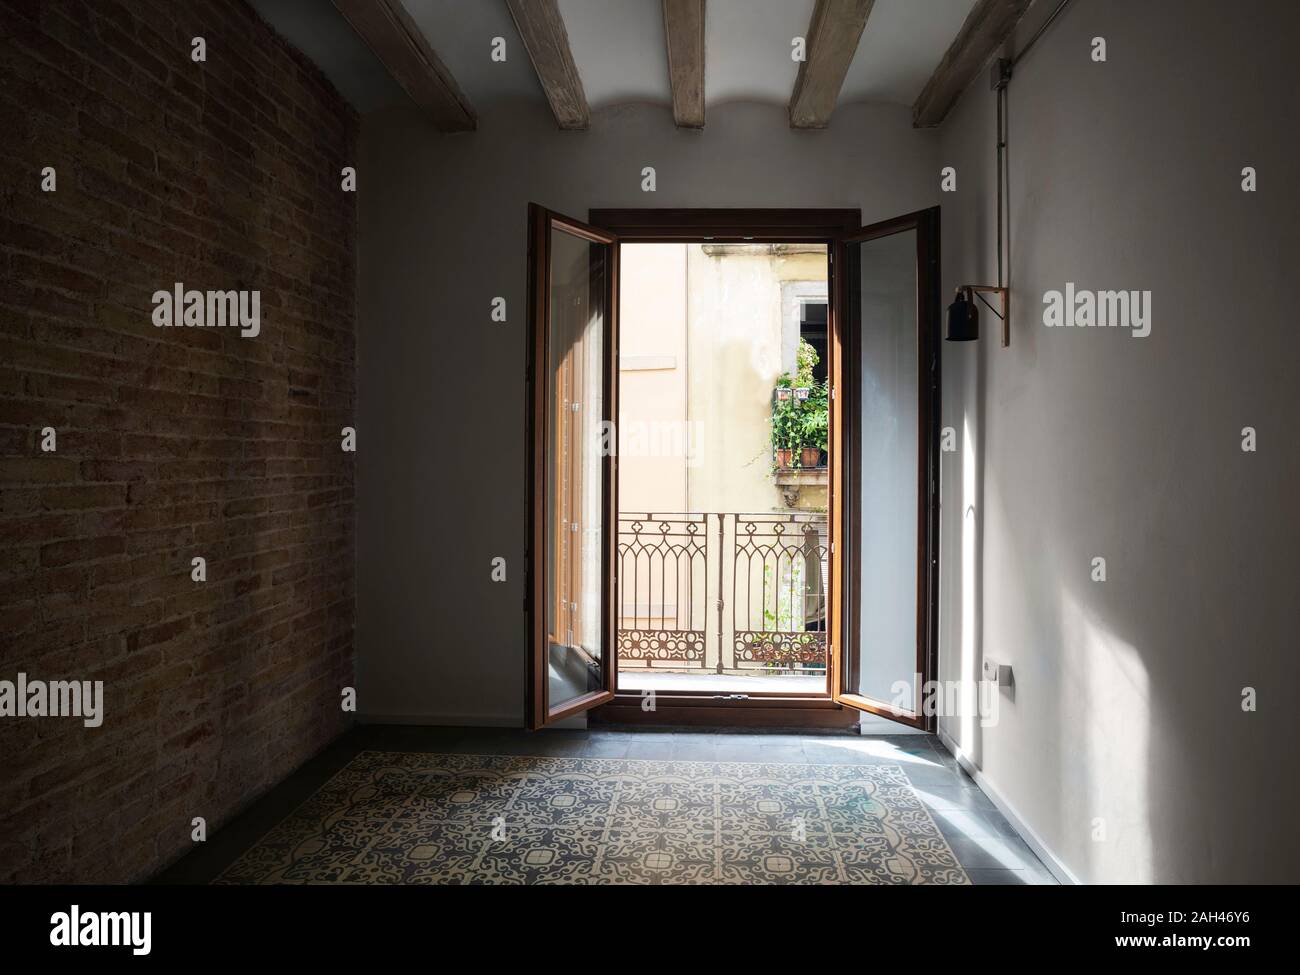 Boden deckenlampe altbau sclafzimmer -Fotos und -Bildmaterial in hoher  Auflösung – Alamy